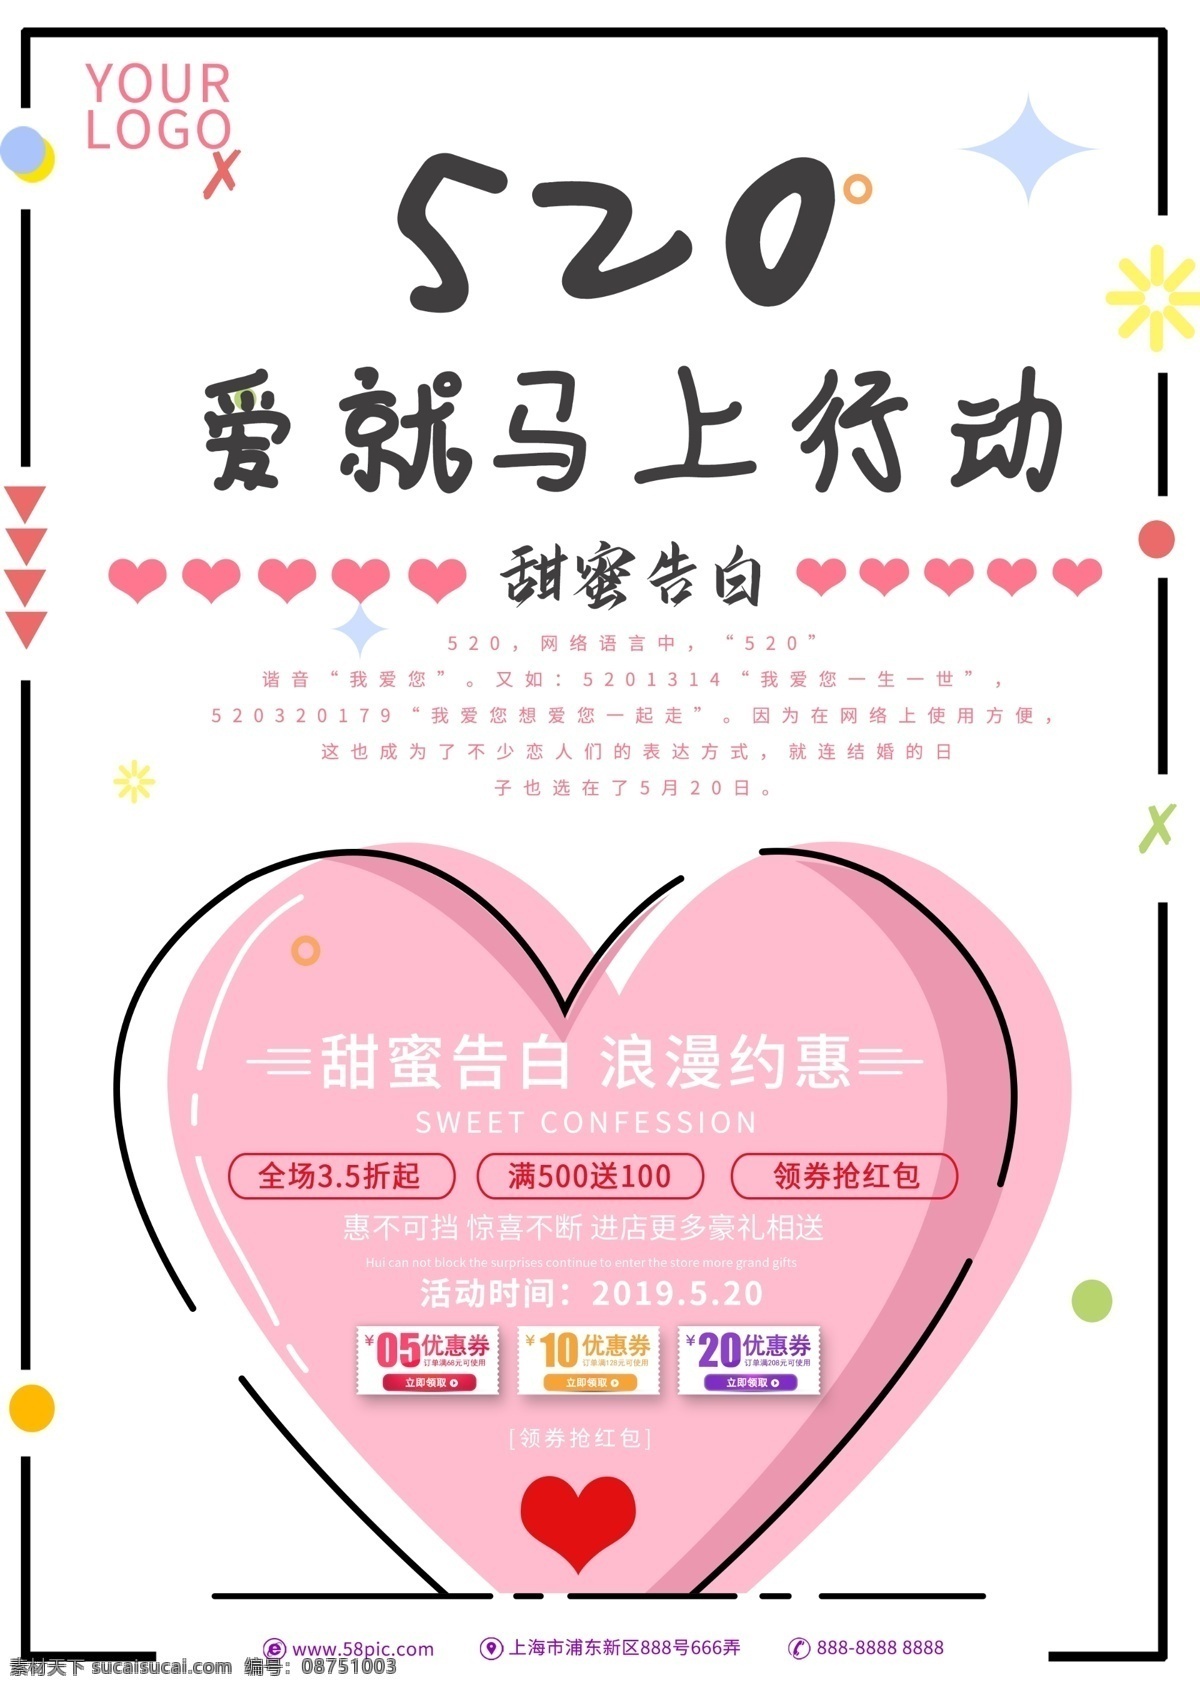 520 爱 马上 行动 爱情 情人节 告白 浪漫